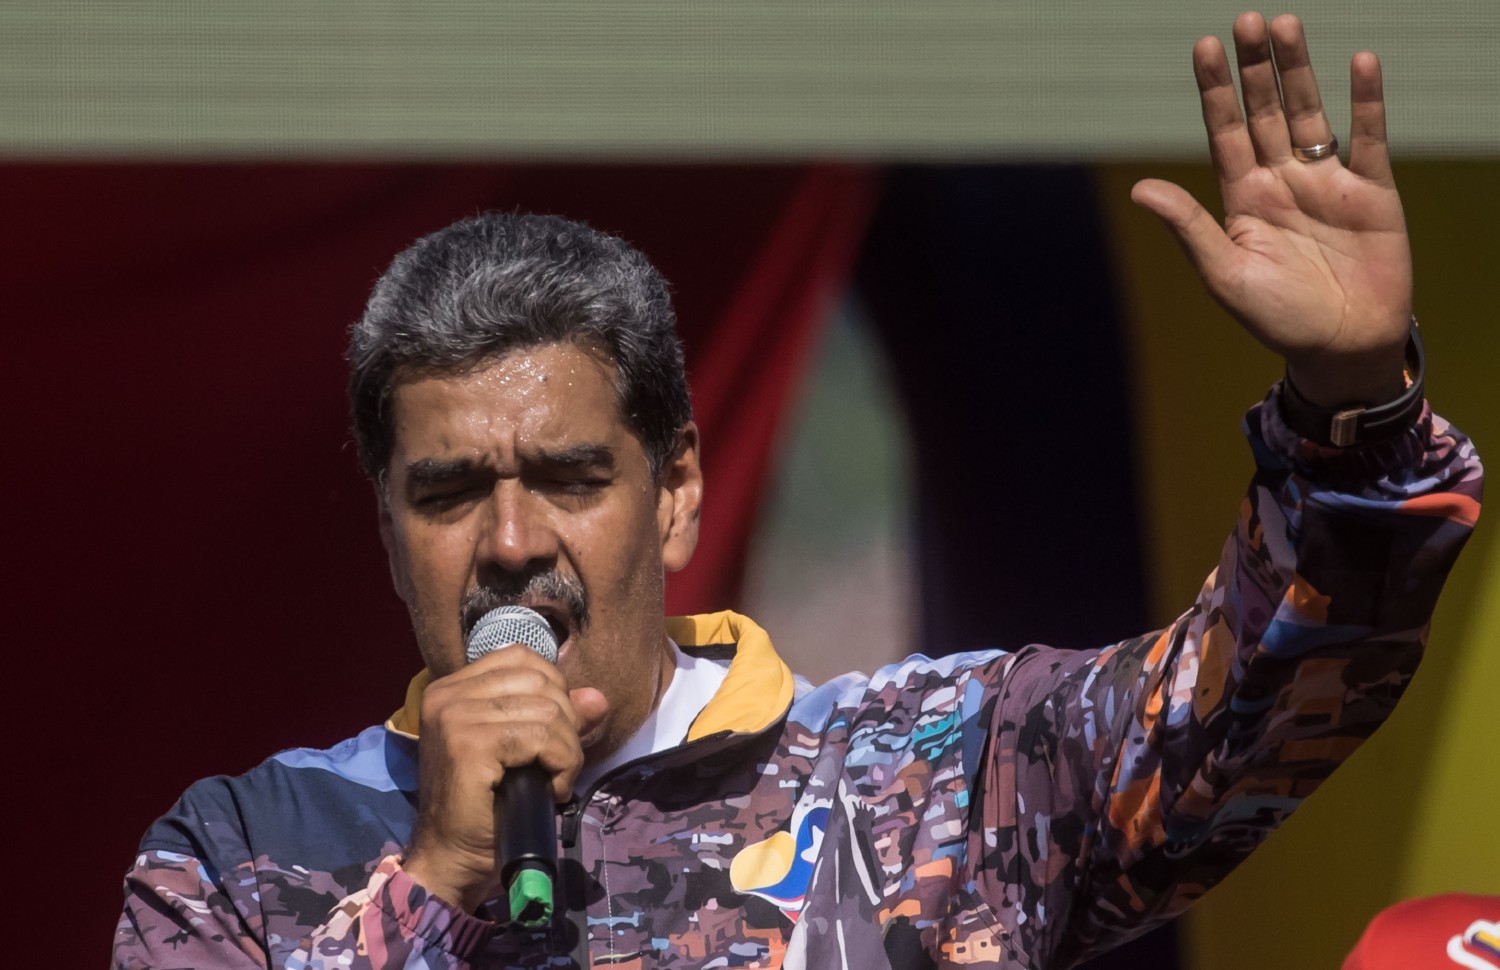 El chavismo en campaña: Maduro amenaza con un "baño de sangre" y María Corina Machado sufre un ataque